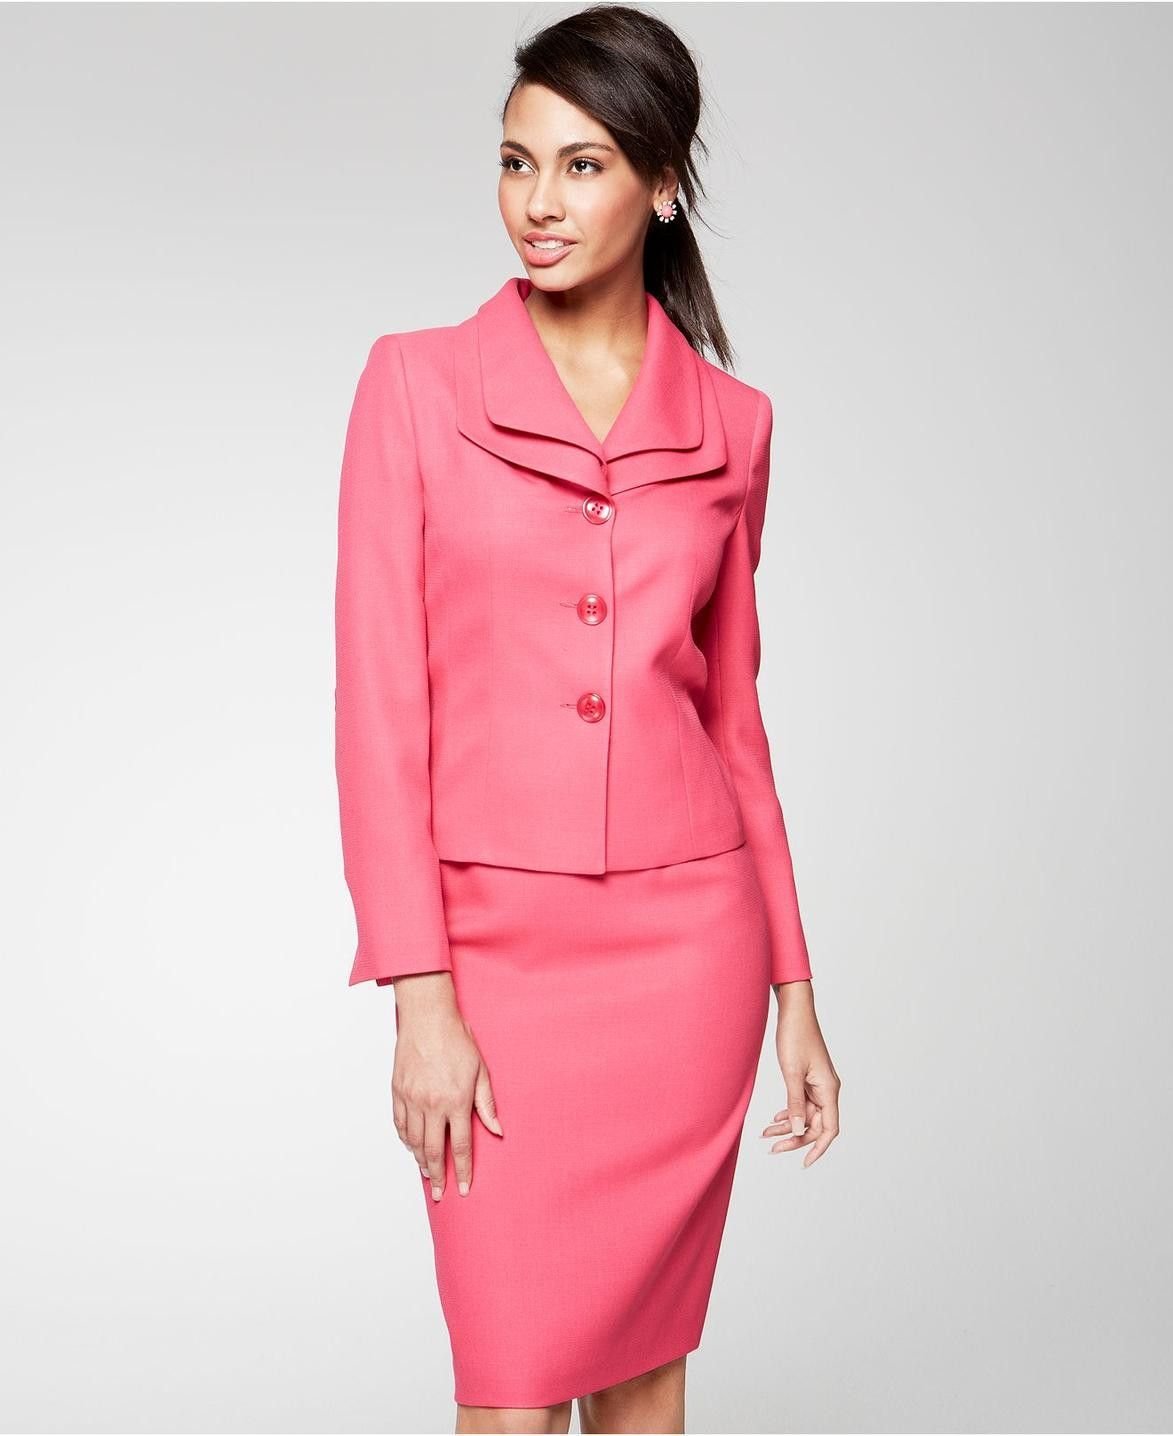 Розовый костюм с юбкой. Розовый юбочный костюм. Розовый костюм женский с юбкой. Ярко розовый костюм с юбкой. Украшение для делового костюма розового цвета.